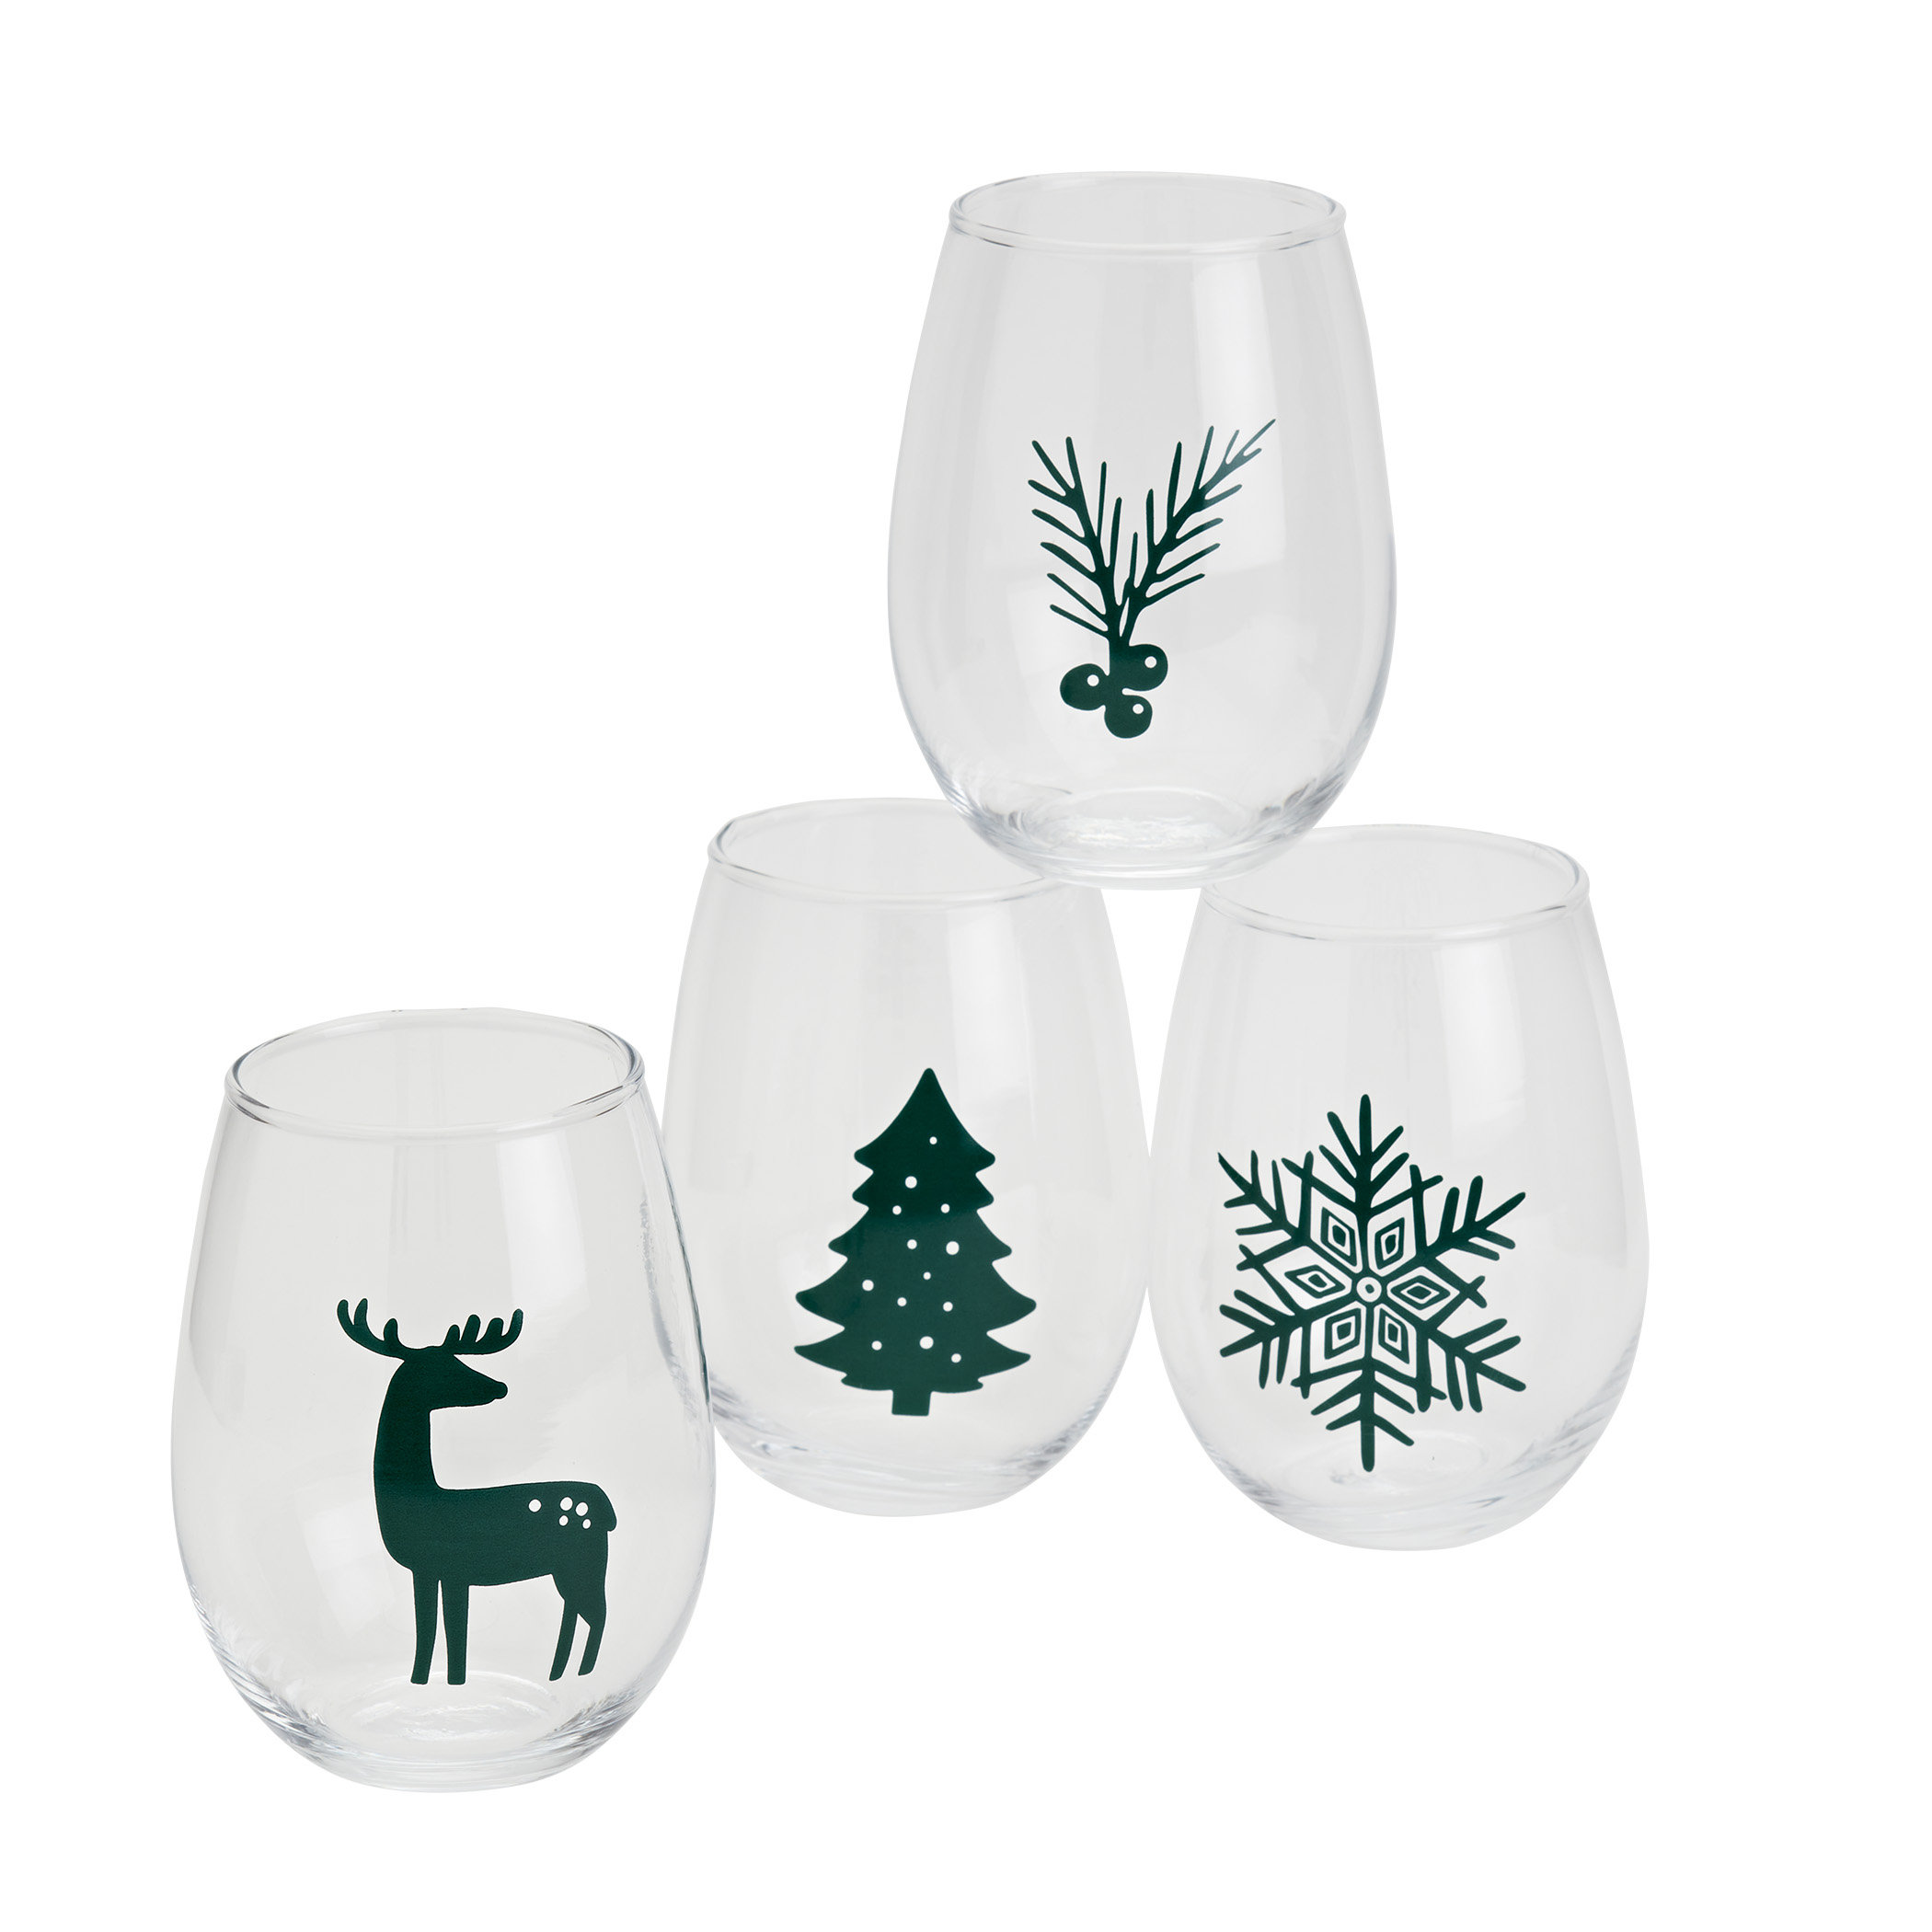 https://assets.wfcdn.com/im/27412914/compr-r85/2246/224669575/winter-forest-set-of-4-19oz-stemless-wine-glasses.jpg